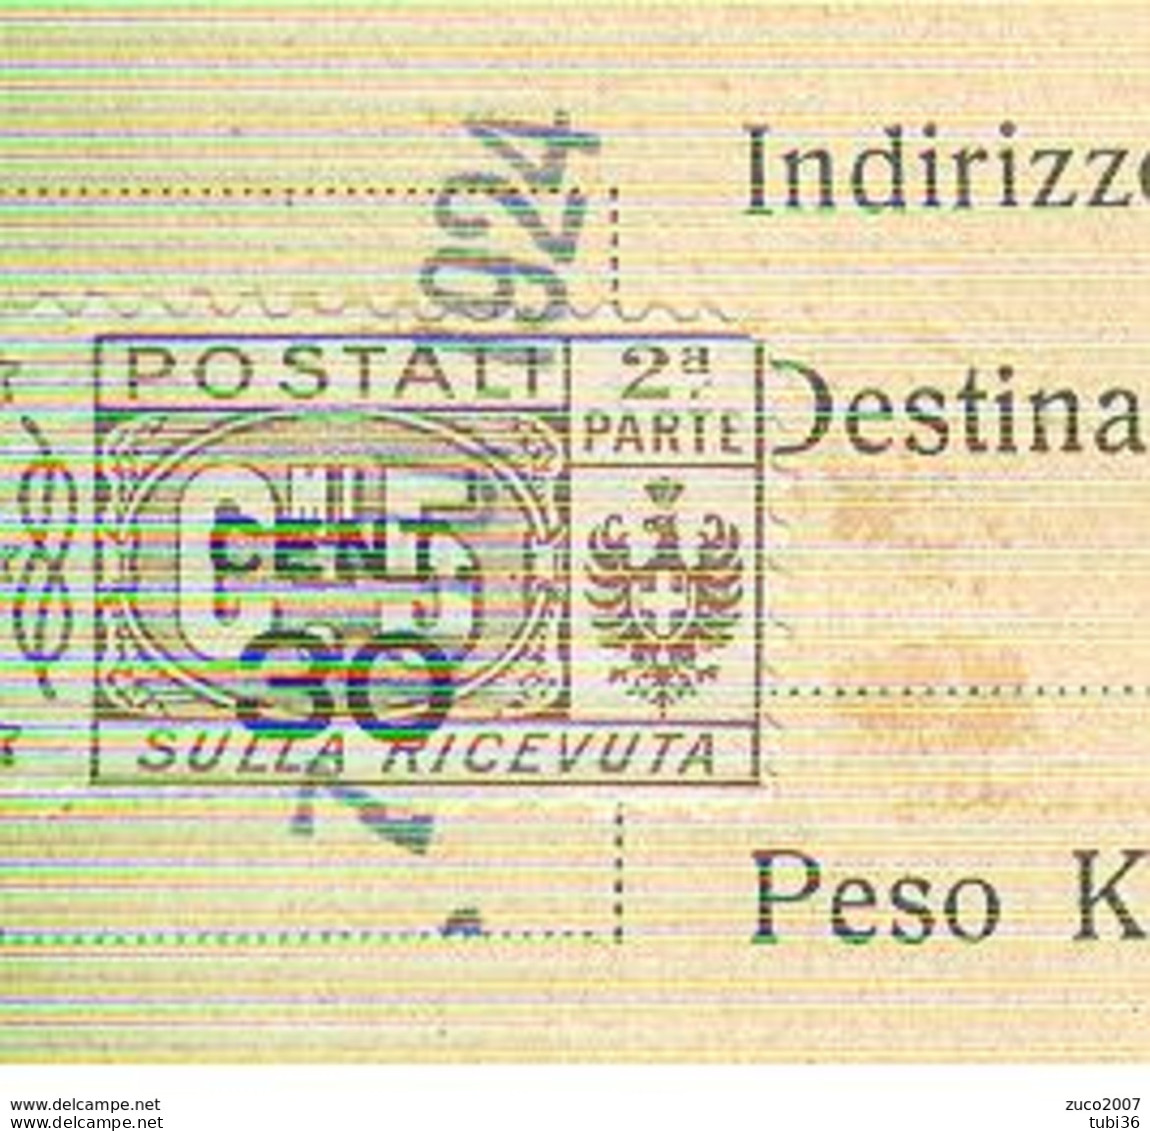 PACCHI POSTALI Cent.30 Su 5- 2° PARTE SULLA RICEVUTA-1924 - MANGANESE CORRIERE-CASTELNUOVO SCRIVIA (ALESSANDRIA), - Postal Parcels